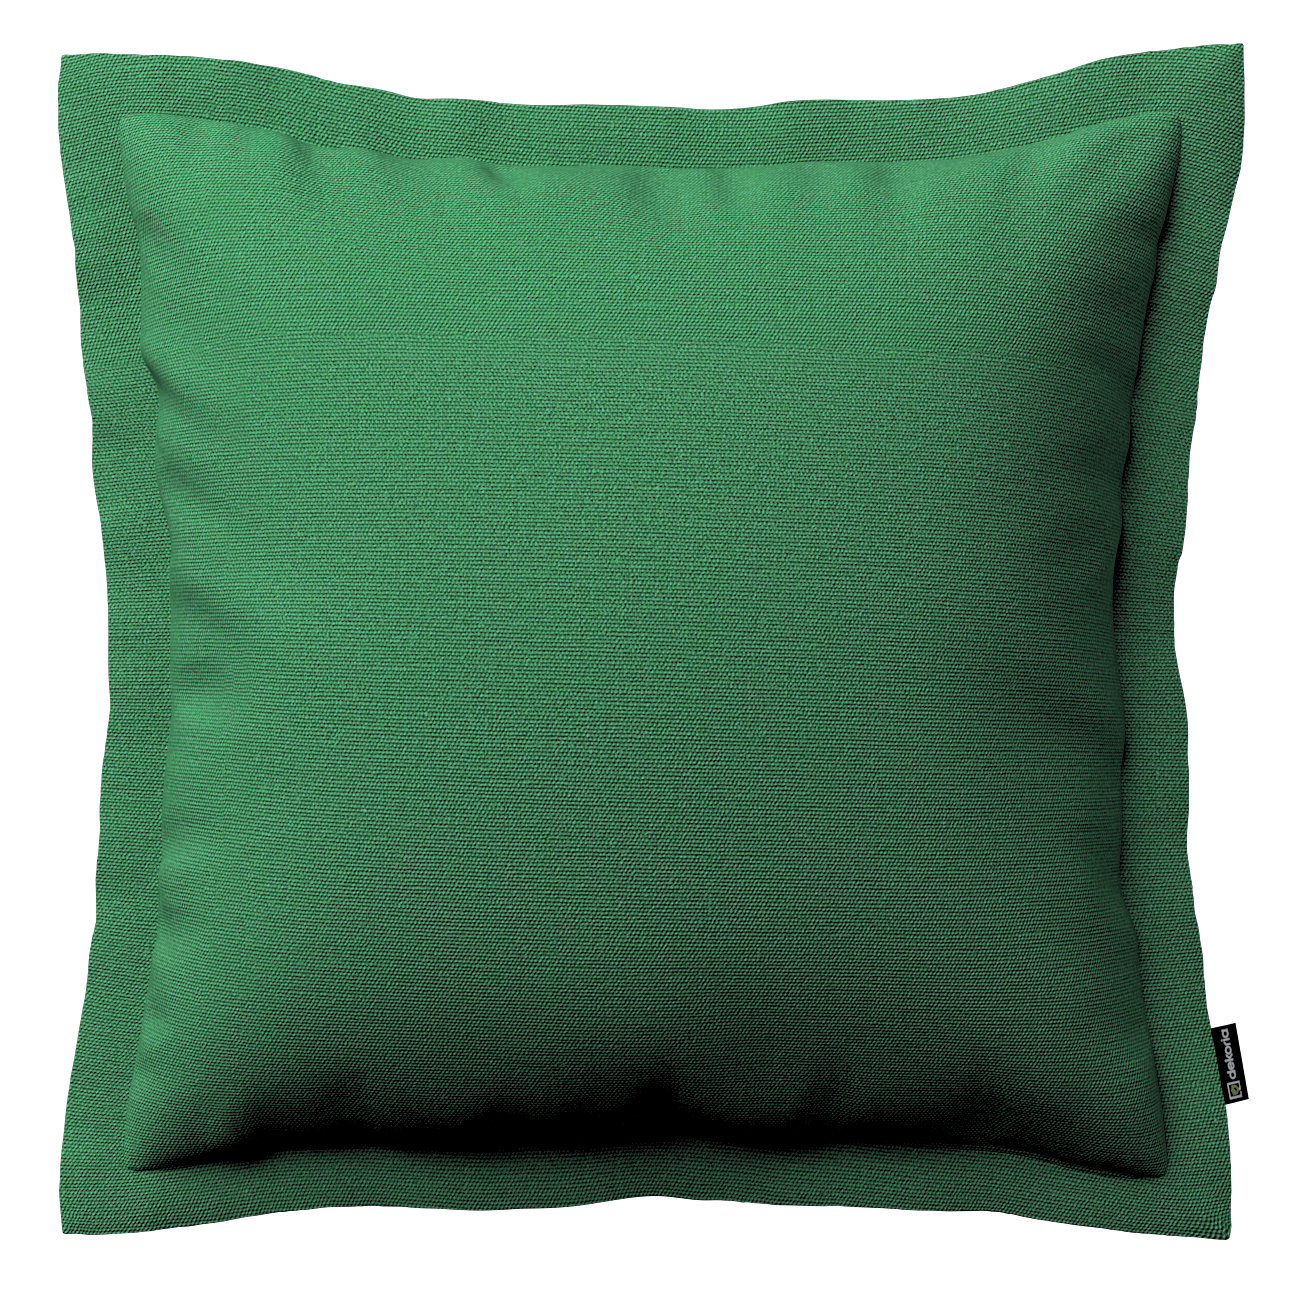 Kissenhülle Mona mit Stehsaum, grün, 45 x 45 cm, Loneta (133-18) günstig online kaufen